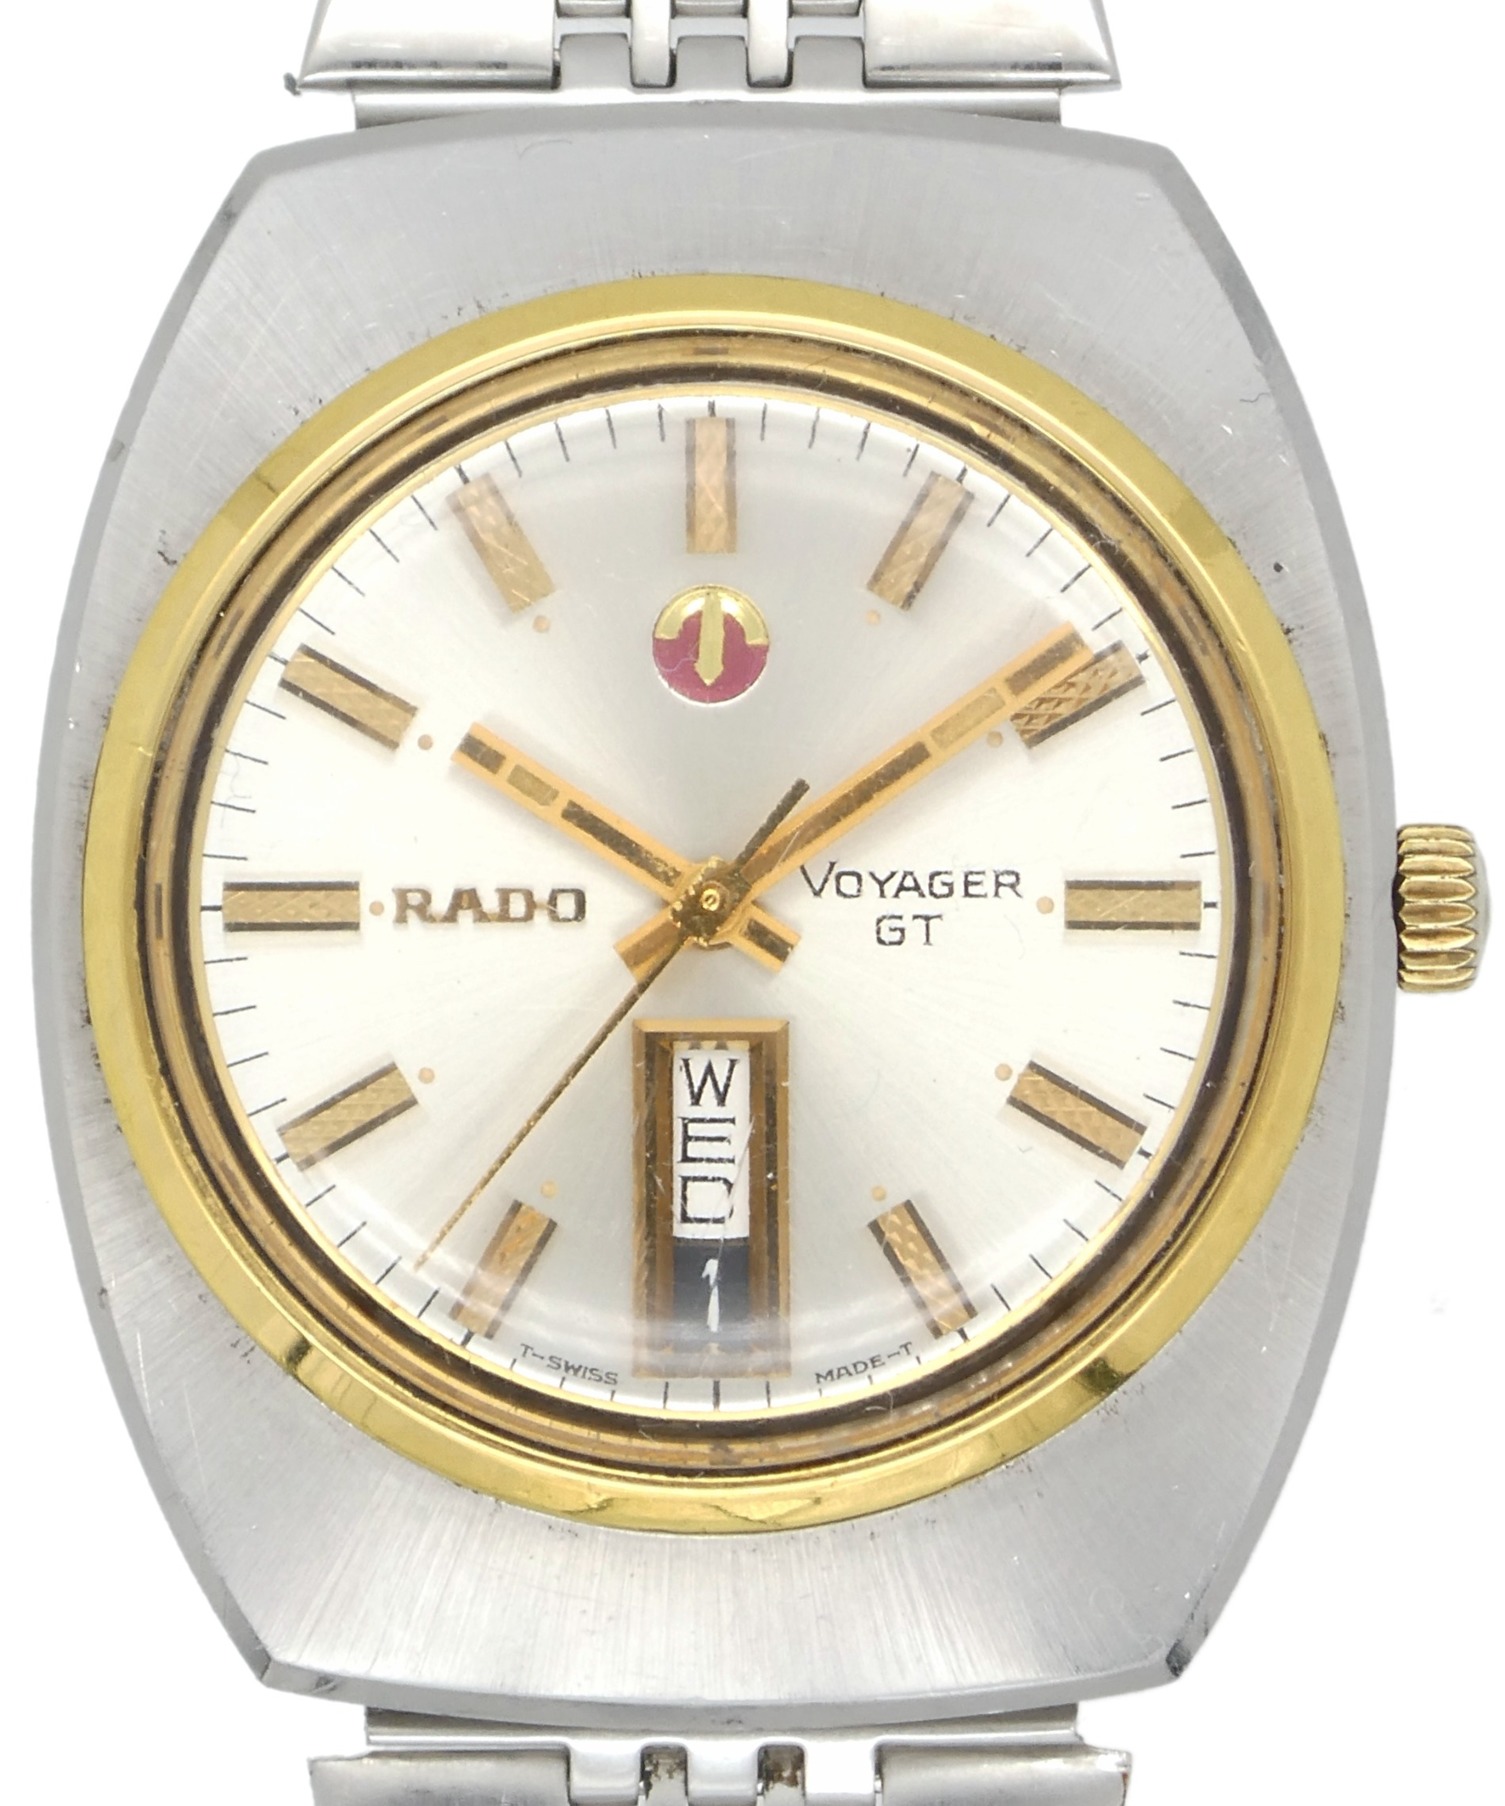 RADO (ラドー) VOYAGER GT 自動巻き ヴィンテージ腕時計 シルバー